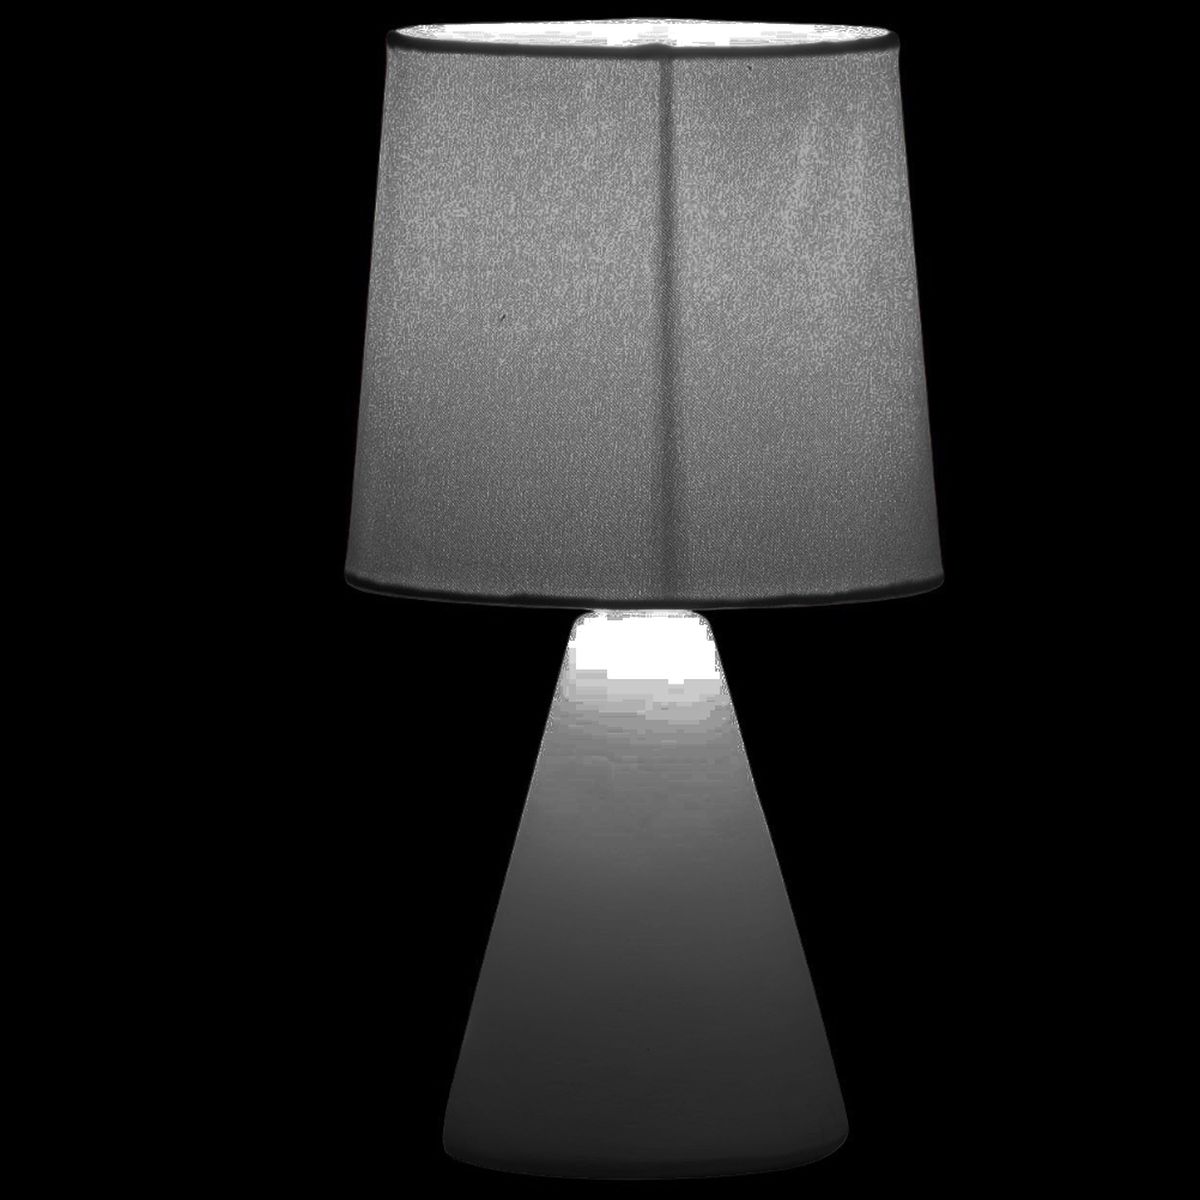 Dark gray sandstone lamp 25 cm